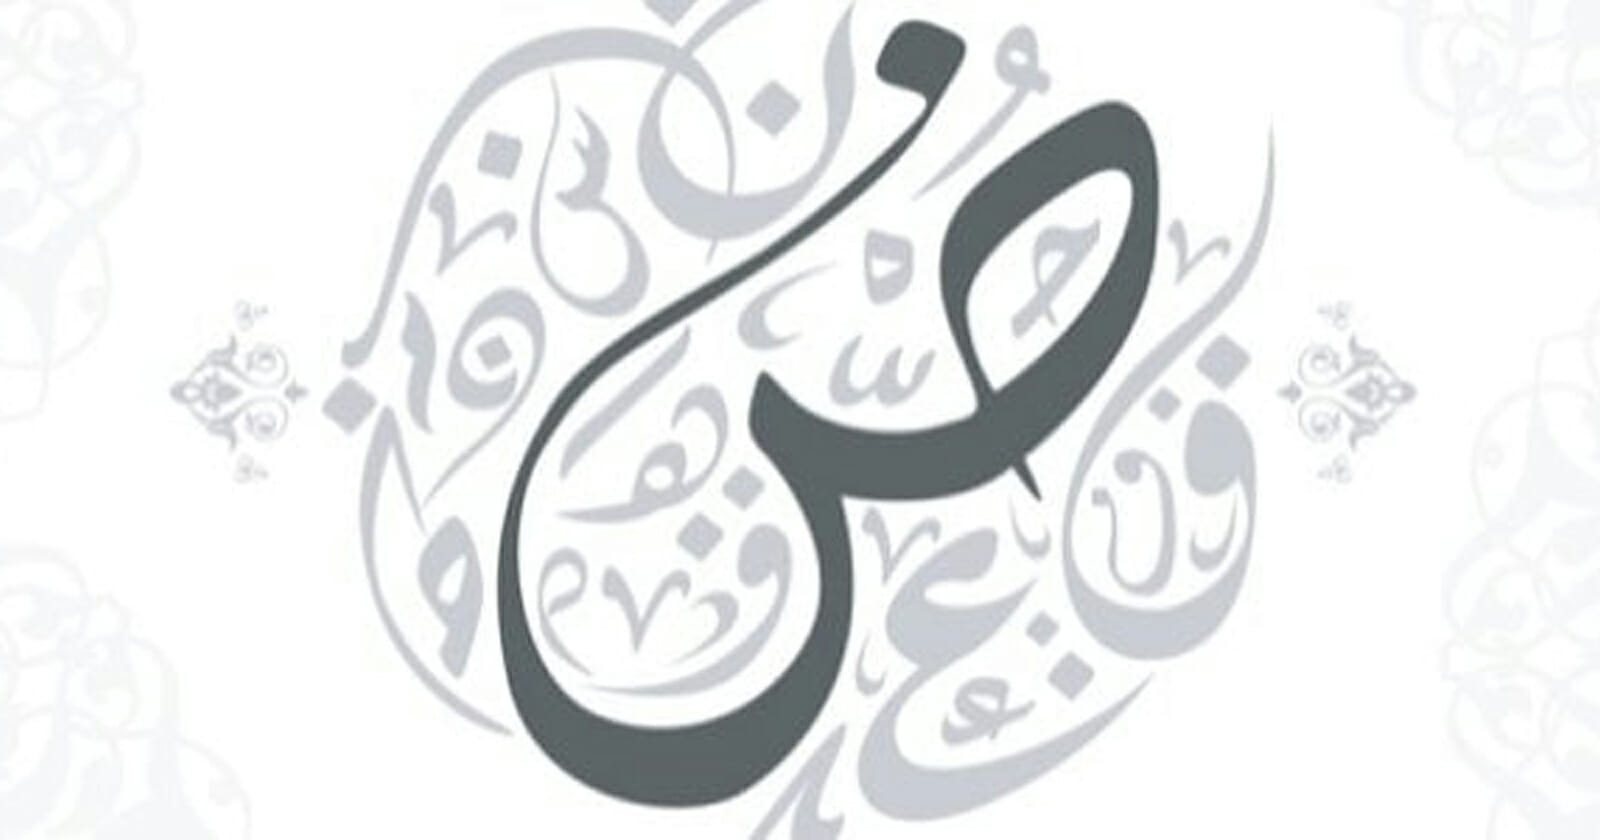 اليوم العالمي للغة العربية – الاحتفال بتراثنا وهويتنا